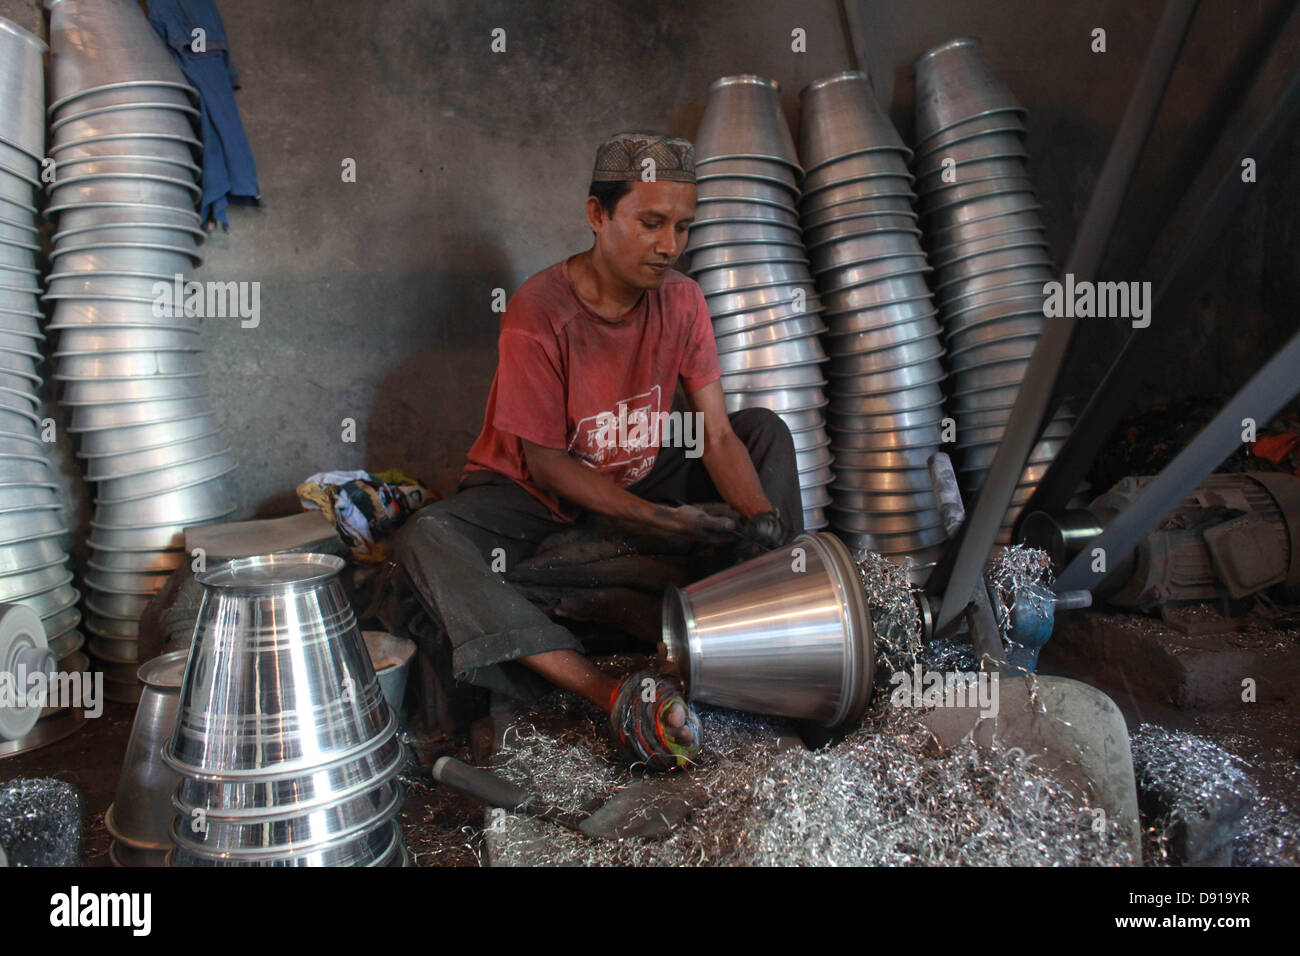 Dhaka, Bangladesh, le 08 juin 2013 ; le Bangladesh travaillent dans un milieu limité dans l'étroit et souvent sans beaucoup de la manière de l'équipement de sécurité. Même ceux qui travaillent dans une usine métallurgique le faire sans gants masques ou de les exposer au risque d'accidents ou de maladies. Banque D'Images